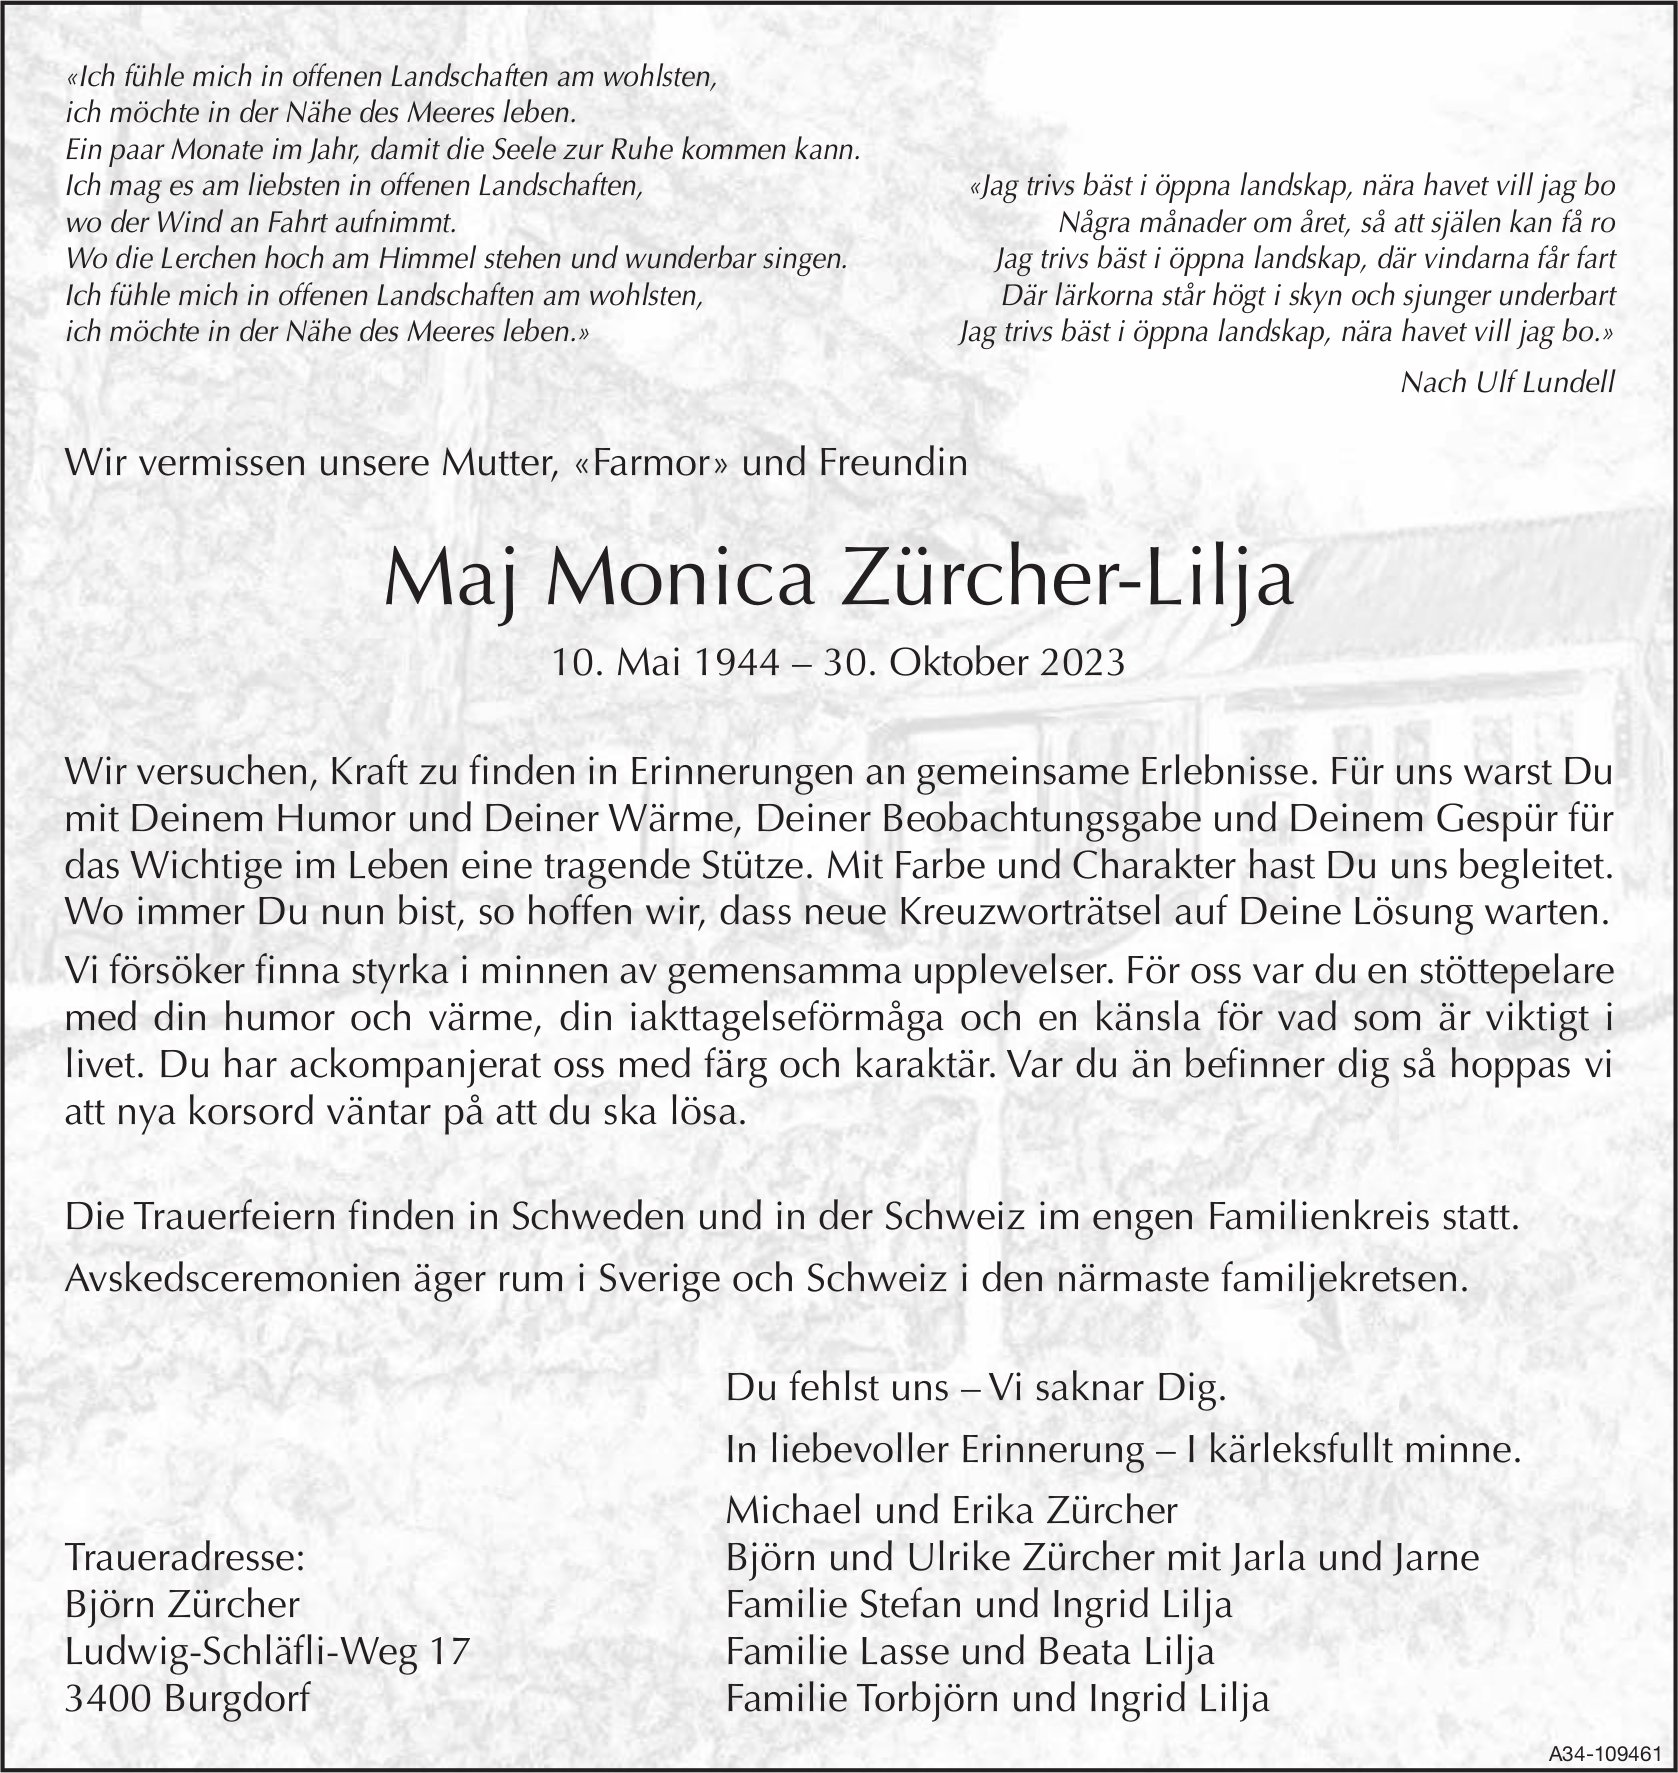 Maj Monica Zürcher-Lilja, Oktober 2023 / TA